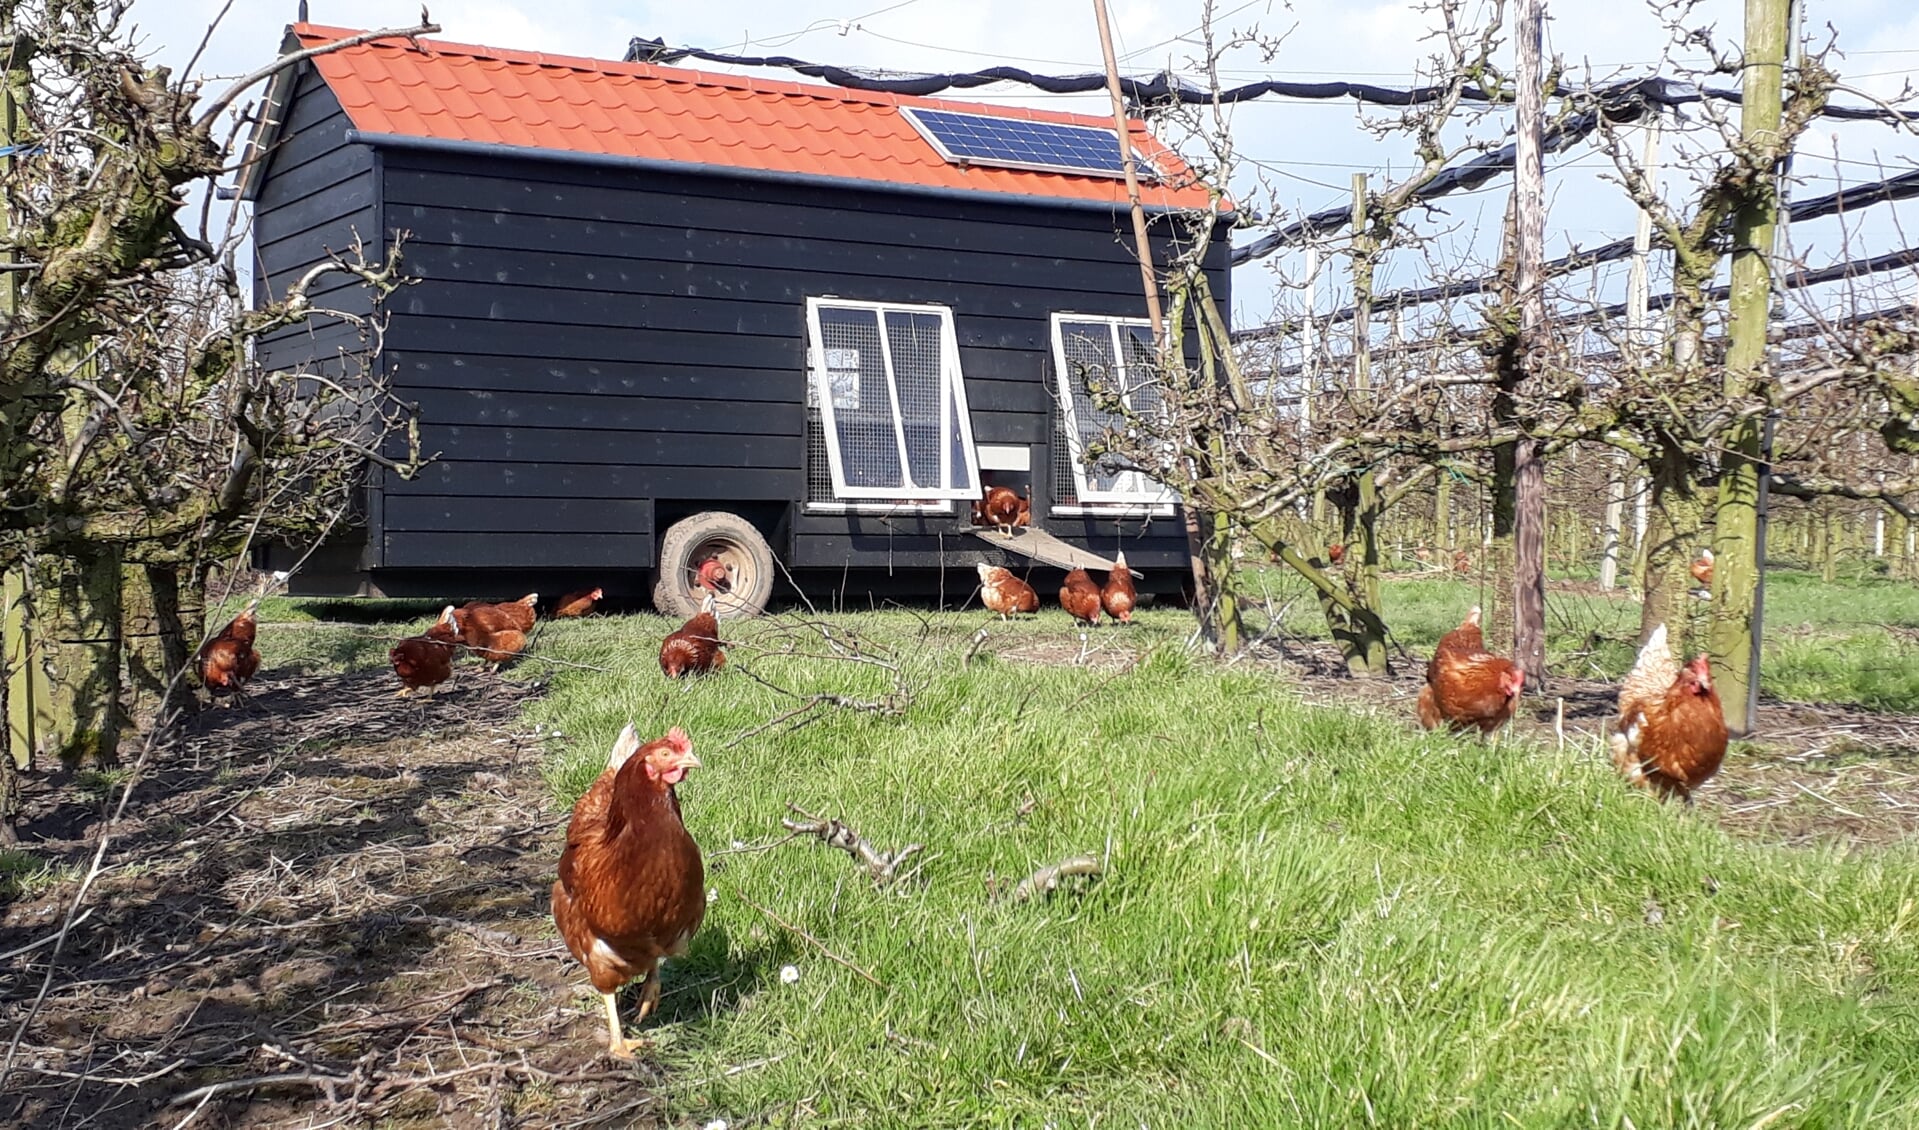 • De mobiele kippenren van de familie Pek uit Langerak.